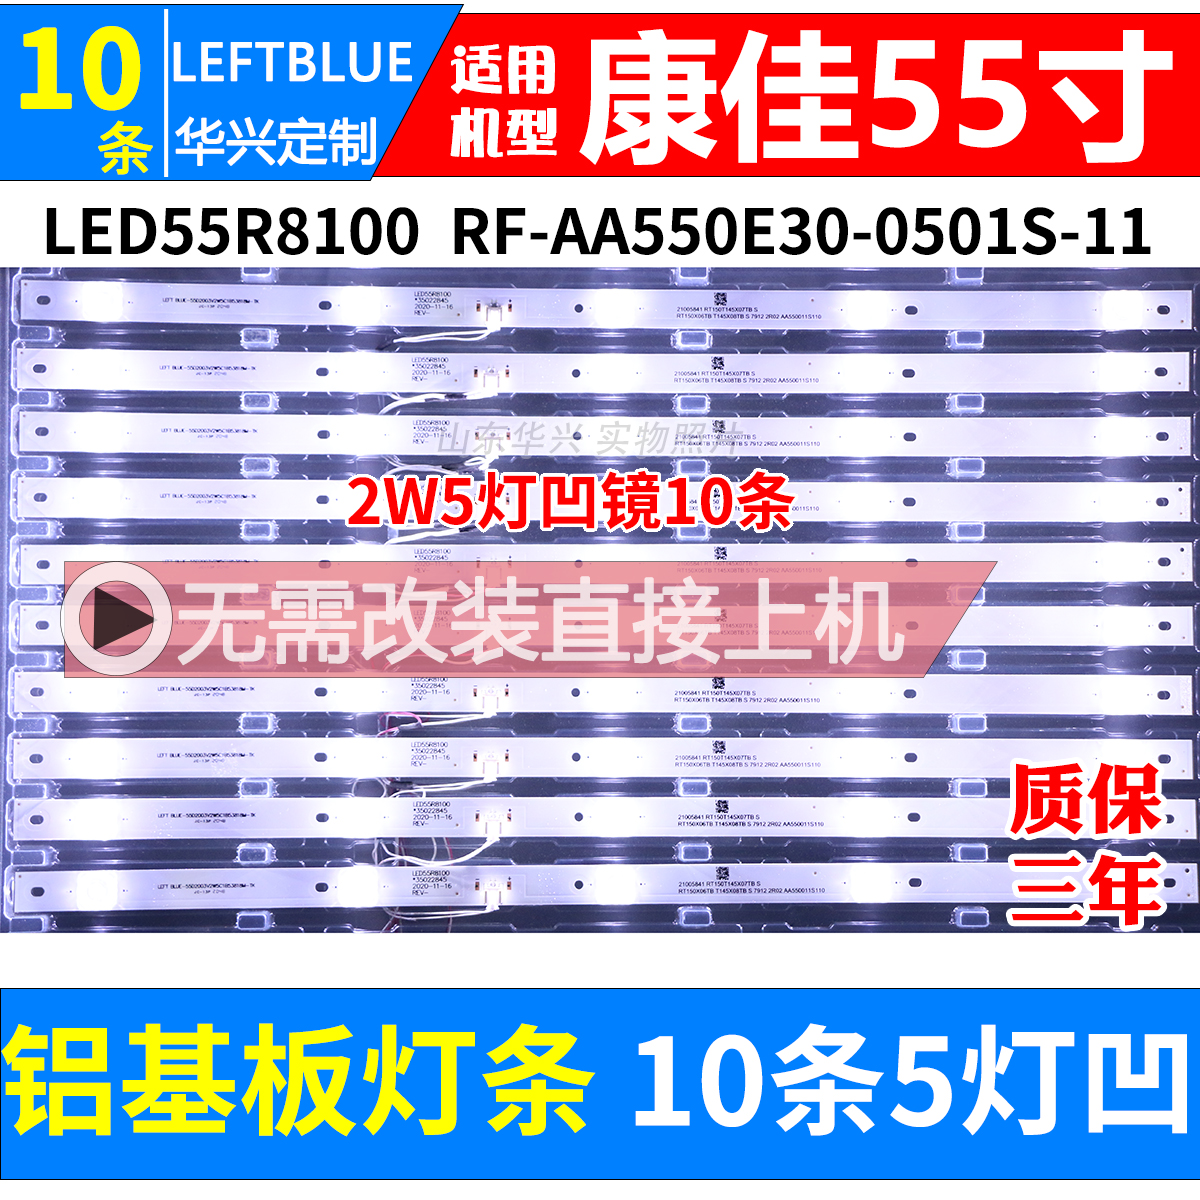 康佳LED55R8100 LED55M1 55P9 55T1灯条RF-AA550E30-0501S-11凹镜